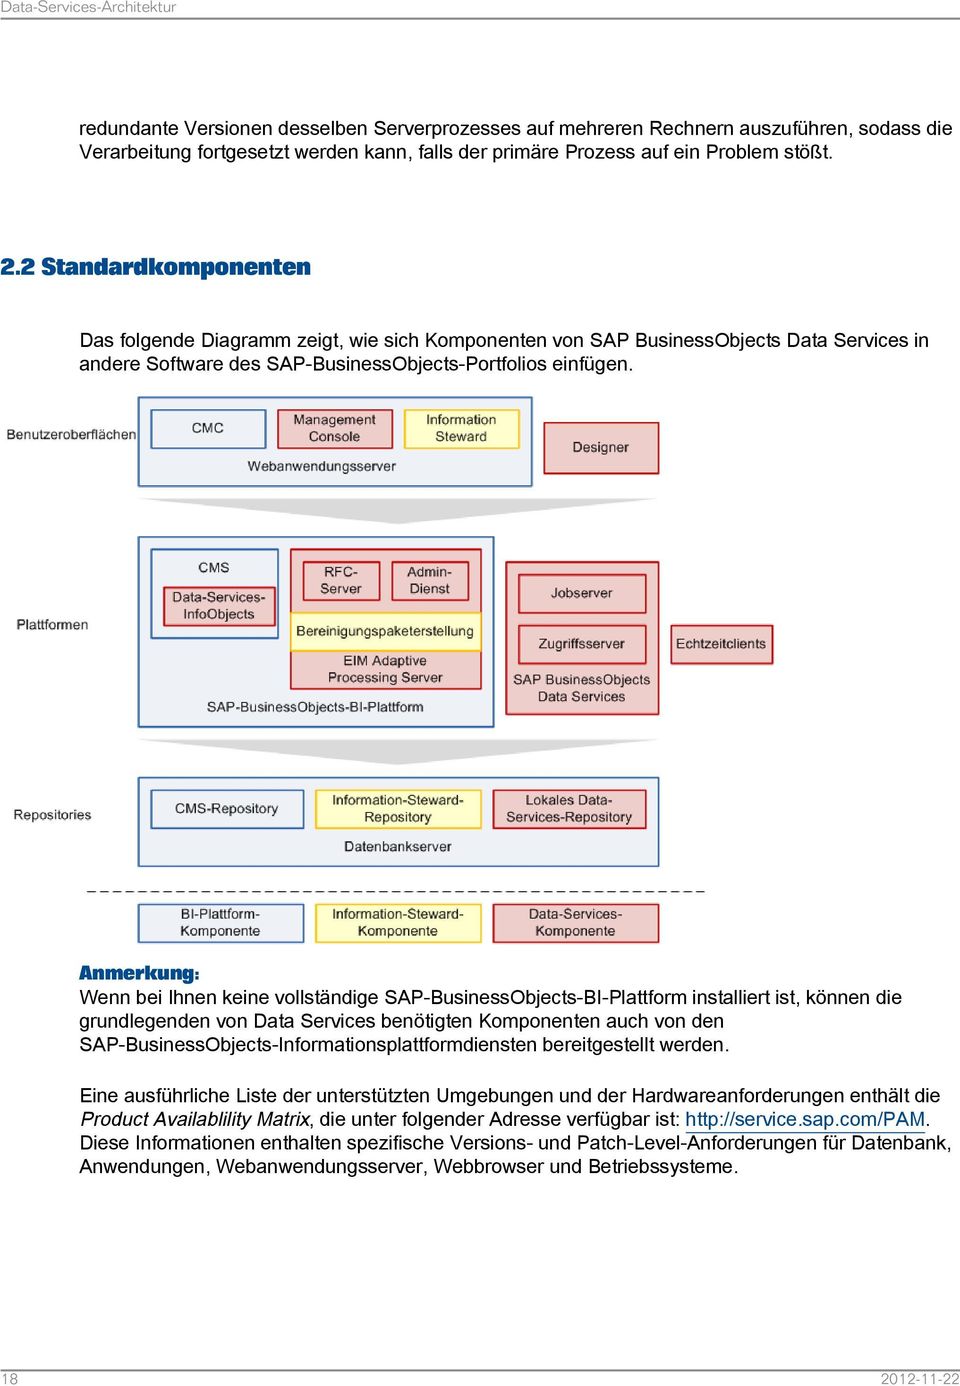 Anmerkung: Wenn bei Ihnen keine vollständige SAP-BusinessObjects-BI-Plattform installiert ist, können die grundlegenden von Data Services benötigten Komponenten auch von den